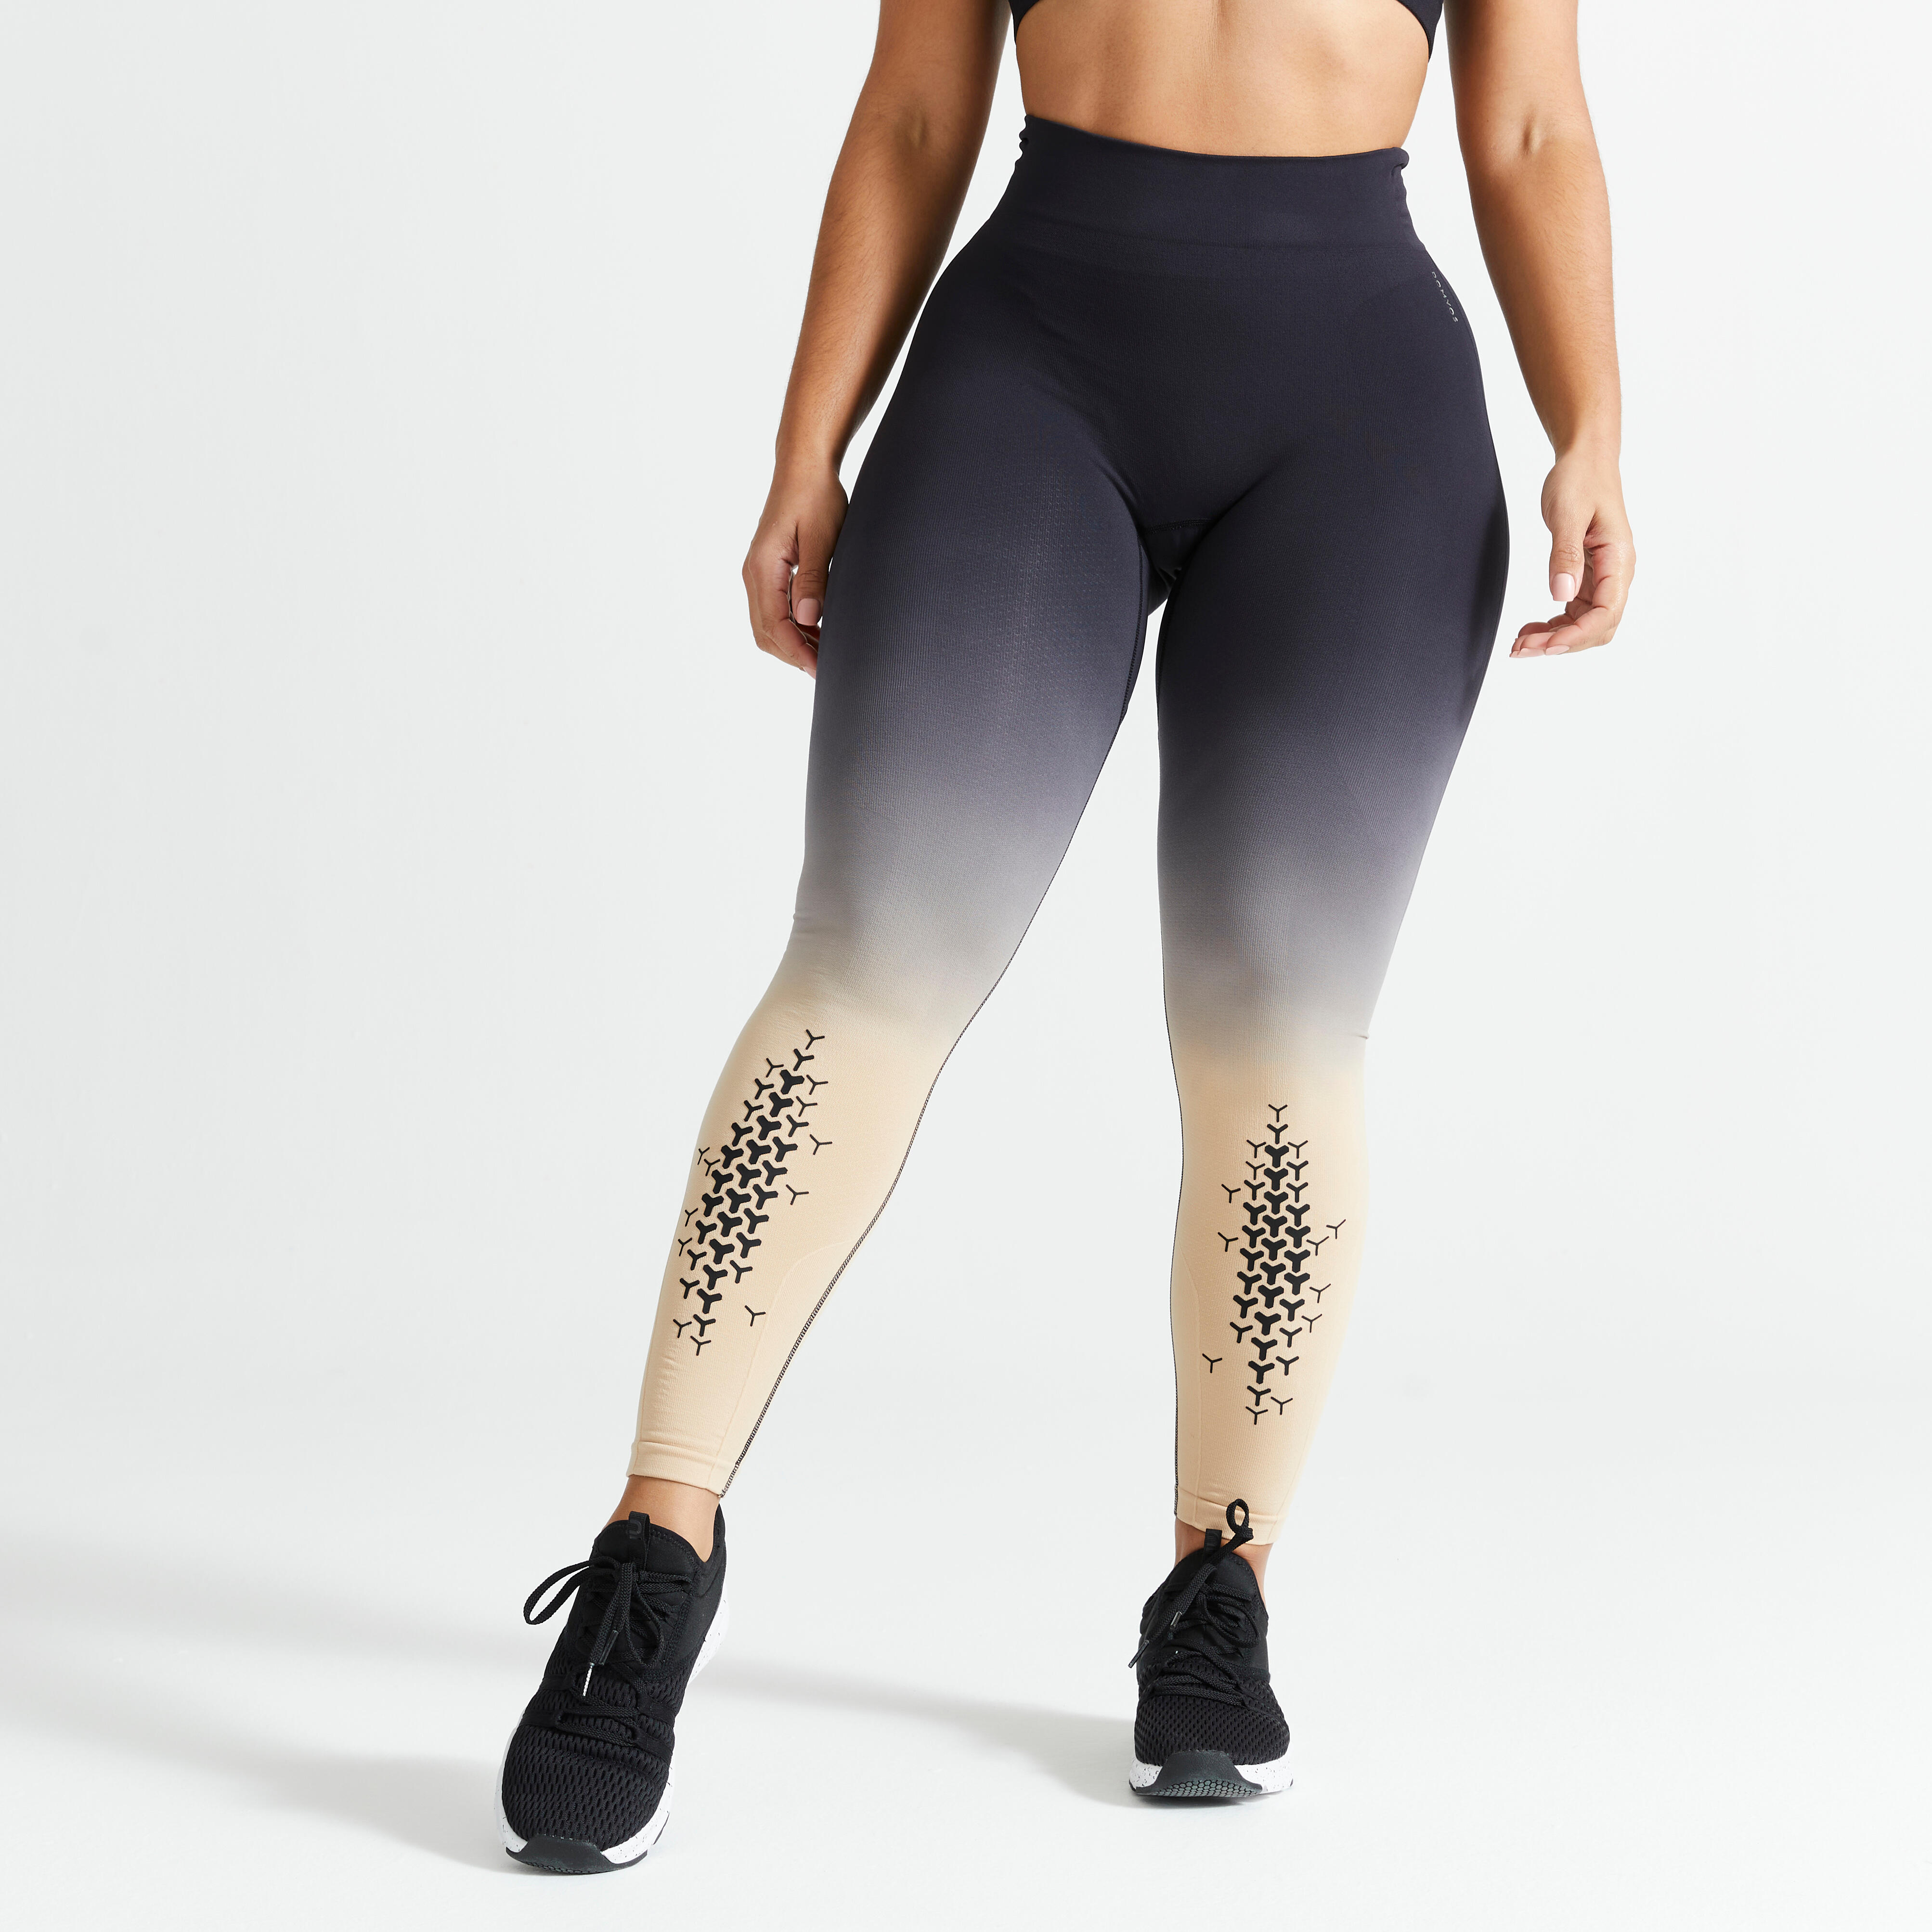 Women's Cross-Training Leggings - Beige/Black - Black, Beige